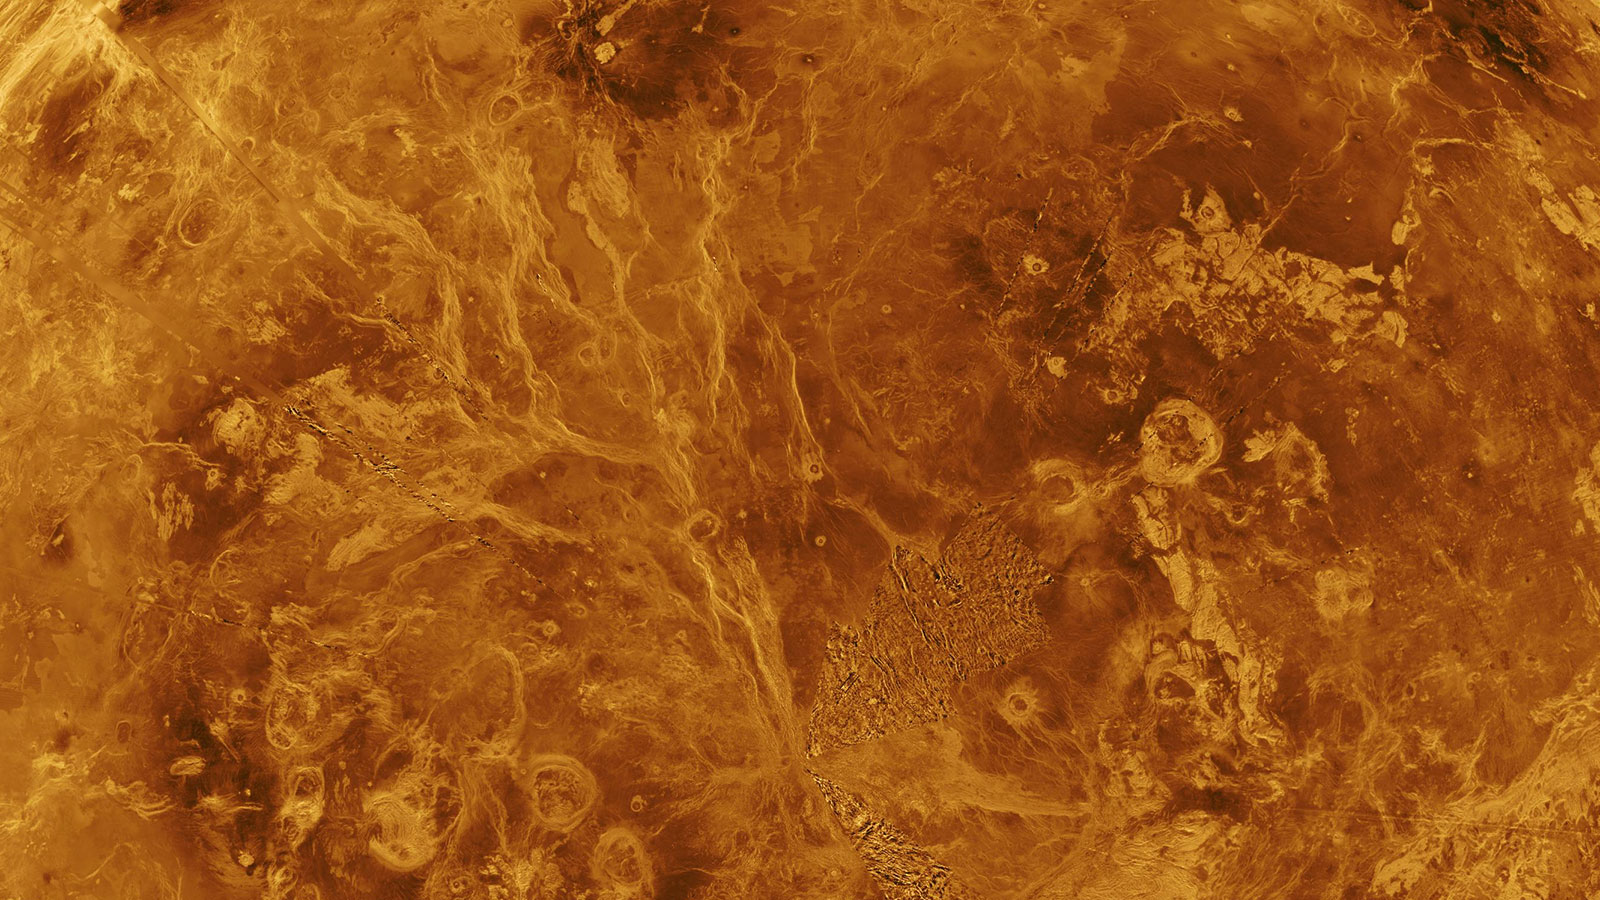 Vista completa de Venus, mostrando un complejo paisaje de montañas, cráteres y flujos de lava